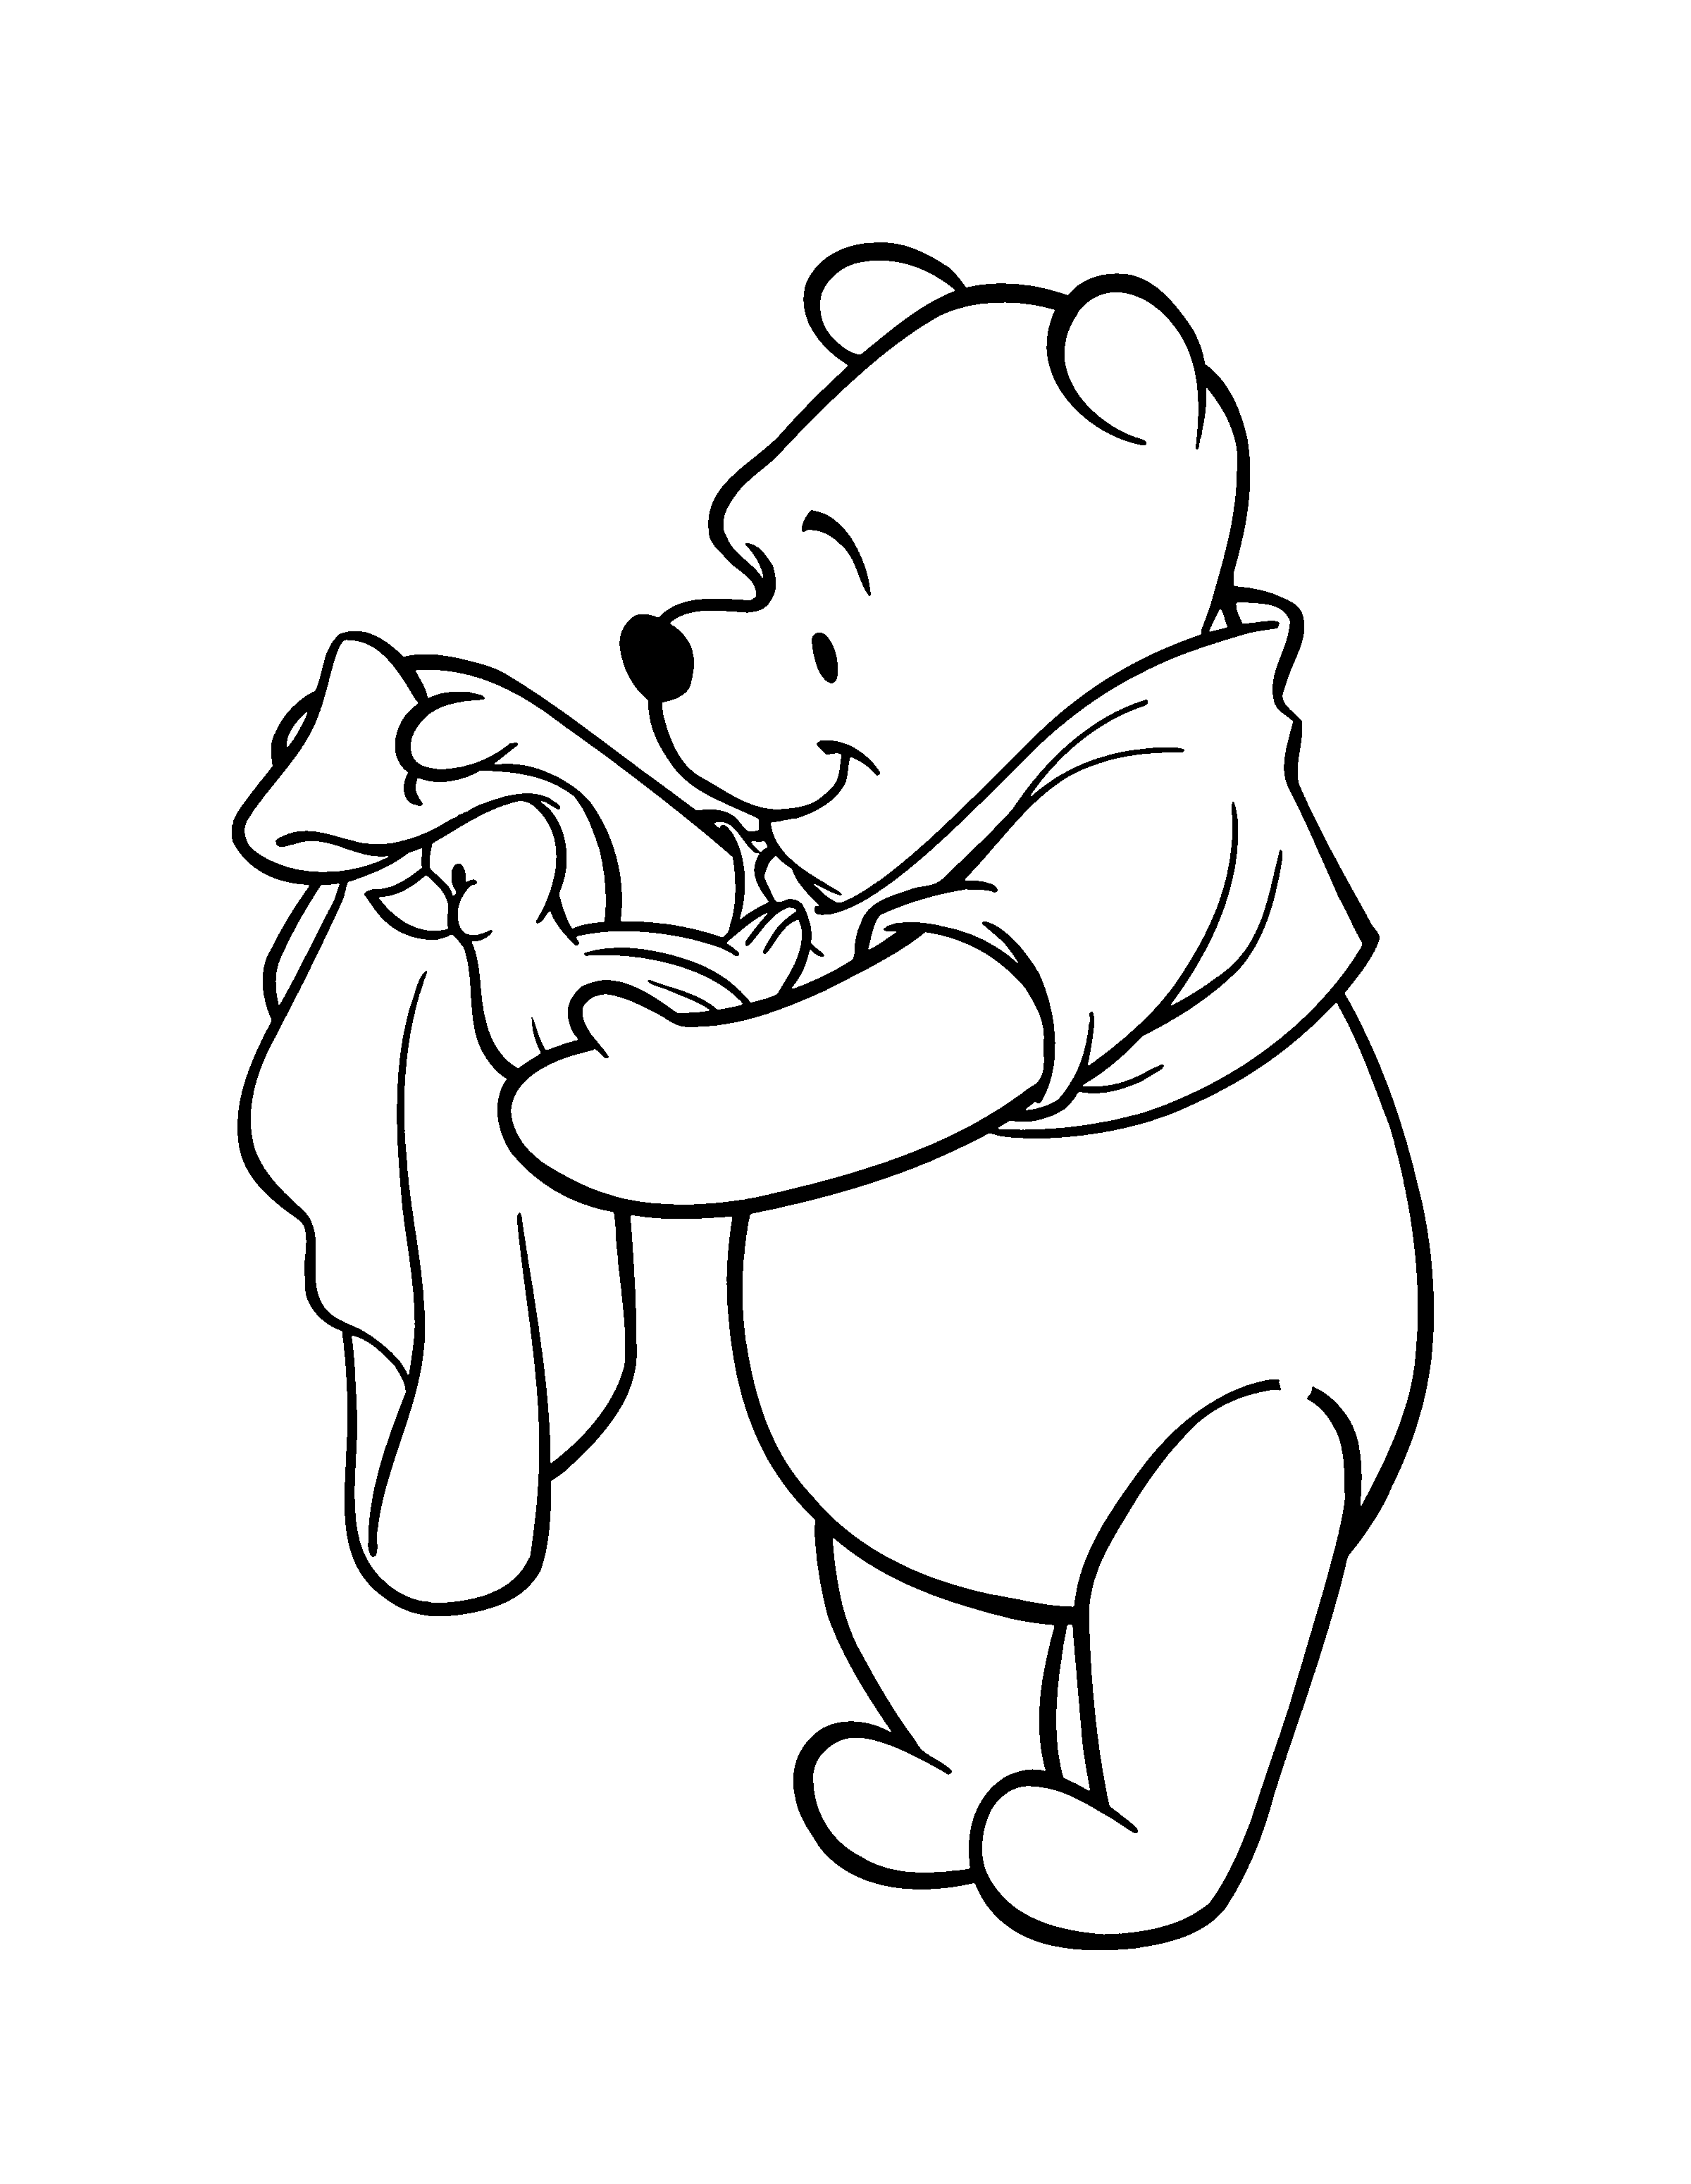 boyama-sayfasi-winnie-the-pooh-hareketli-resim-0120